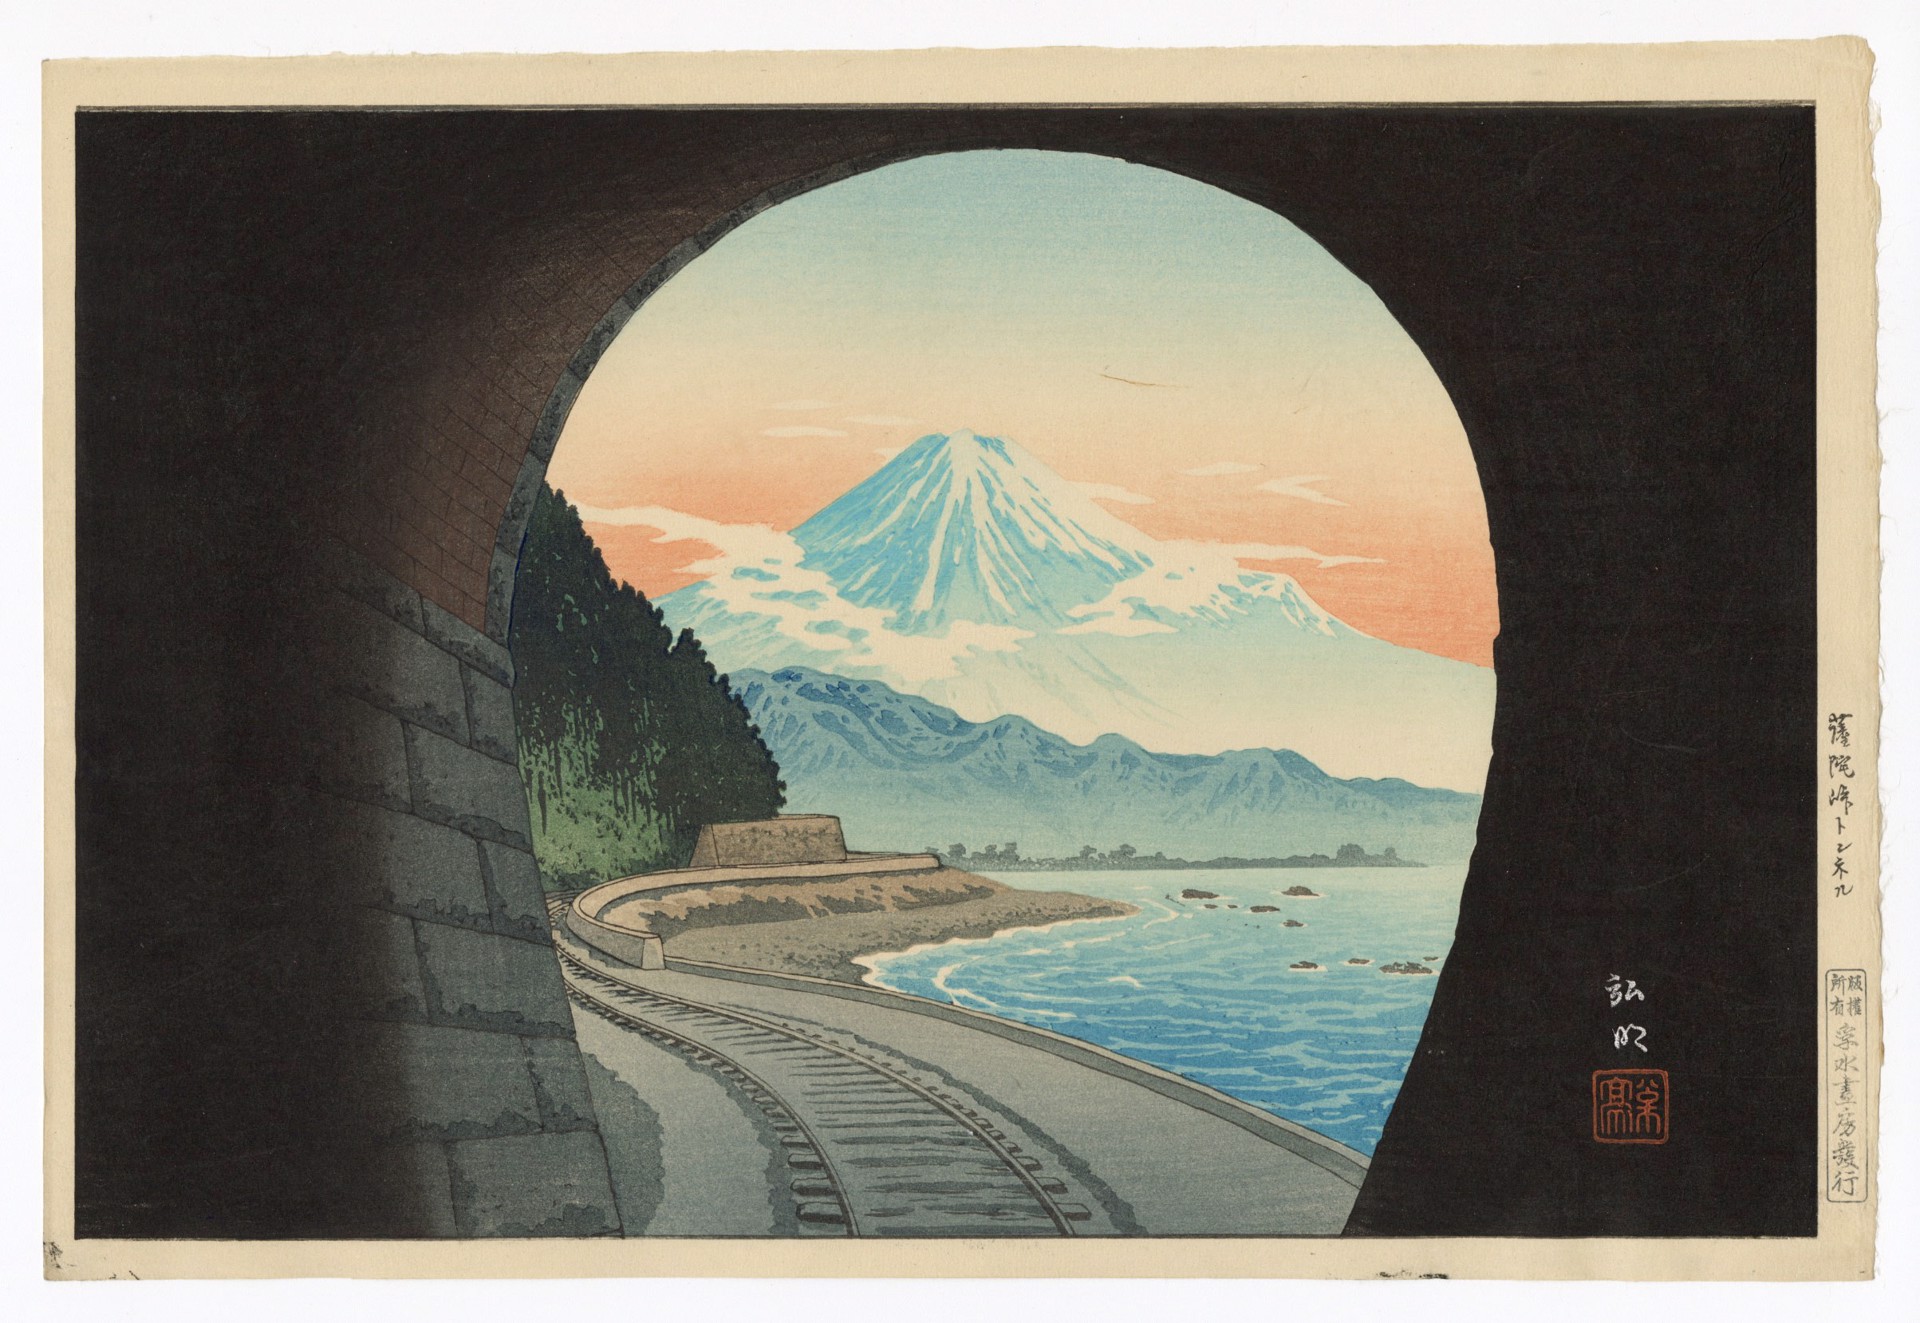 Satta-Togge Mountain Pass Tunnel Mt. Fuji in the Four Seasons by Takahashi Hiroaki